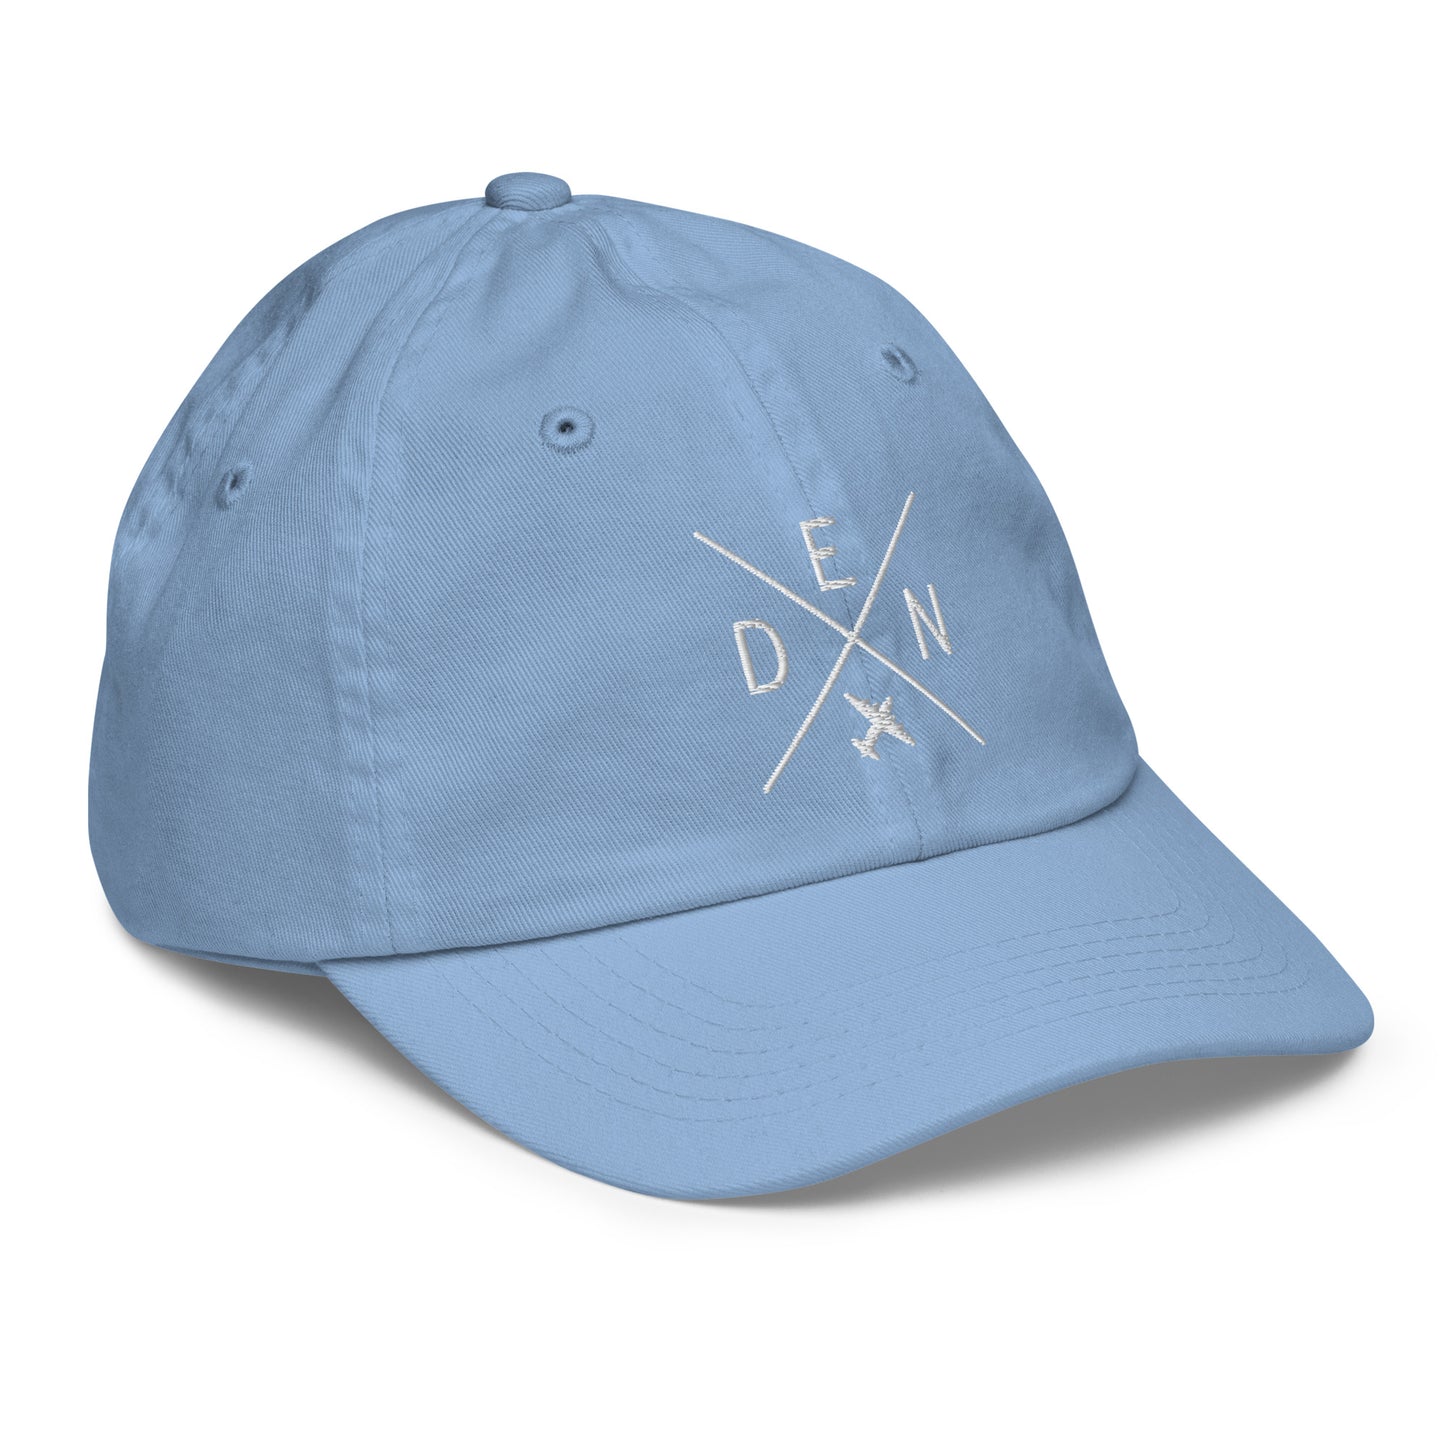 Crossed-X Kid's Baseball Cap - White • DEN Denver • YHM Designs - Image 23